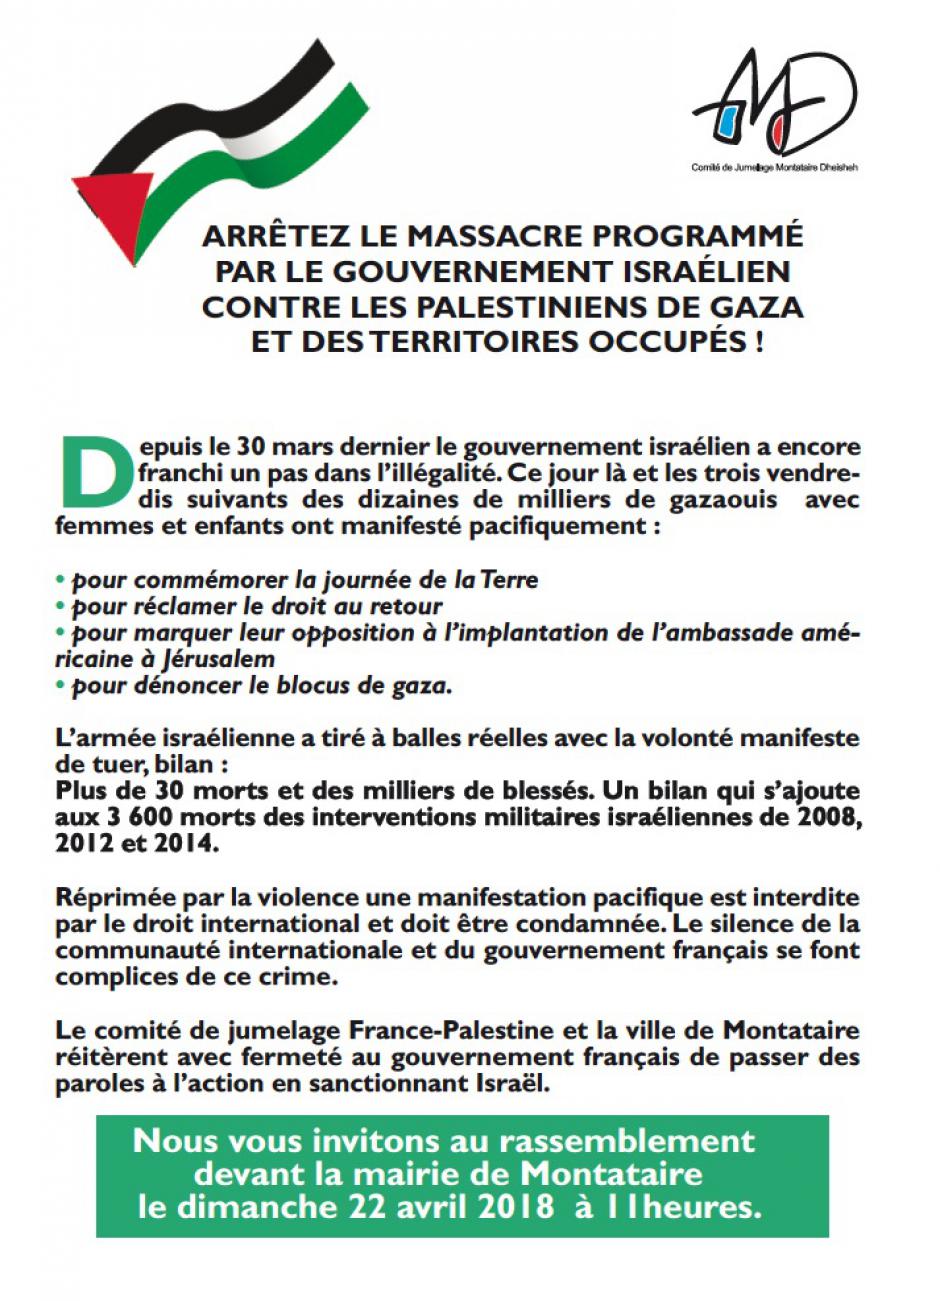 22 avril, Montataire - Comité de jumelage France-Palestine-Rassemblement de soutien aux Palestiniens de Gaza